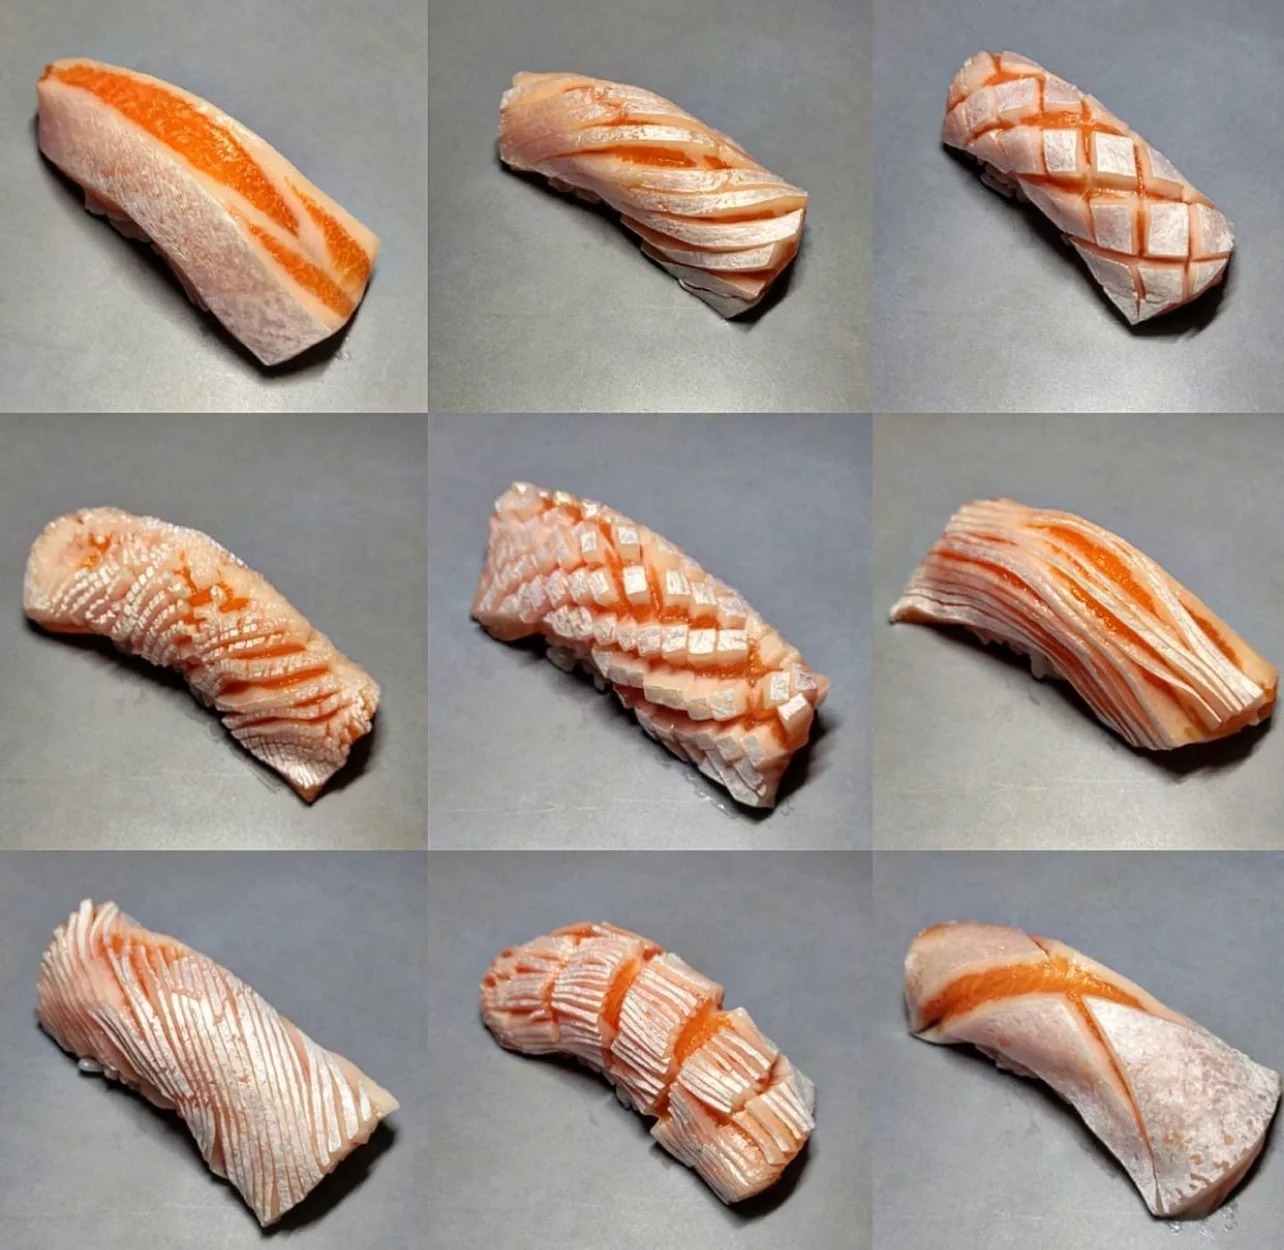 三文鱼的刀法和切法对味觉影响很大